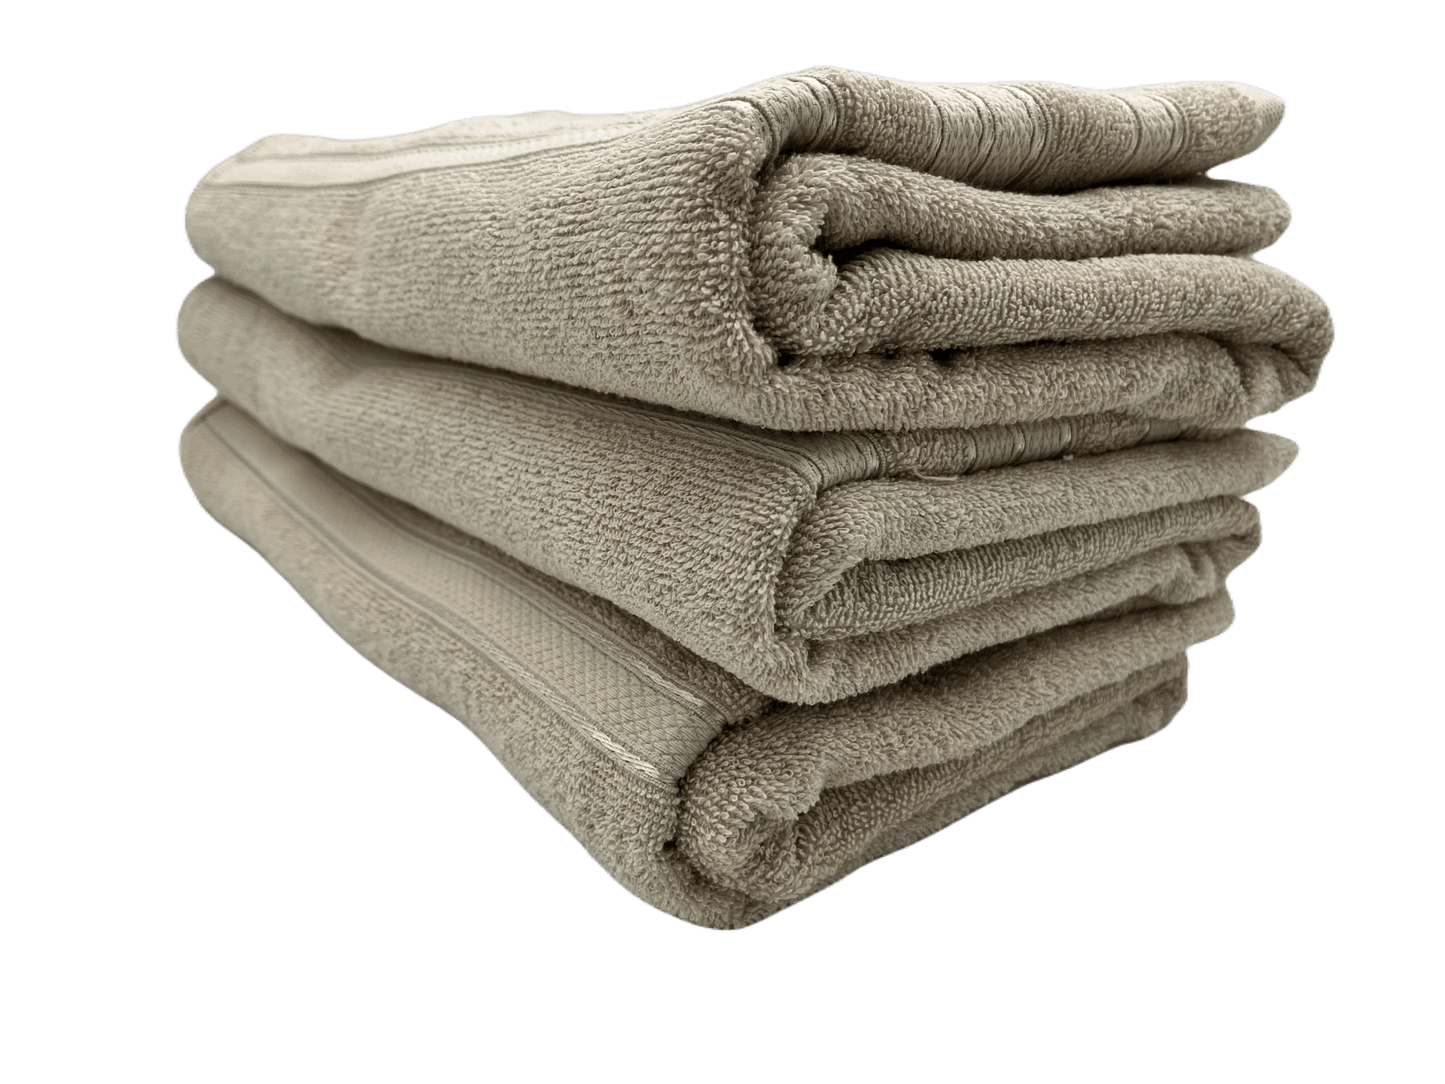 Toalla de algodón importado en medida "baño completo"  es súper suave y absorbente, tamaño de  .80 cm x 1.50 mts